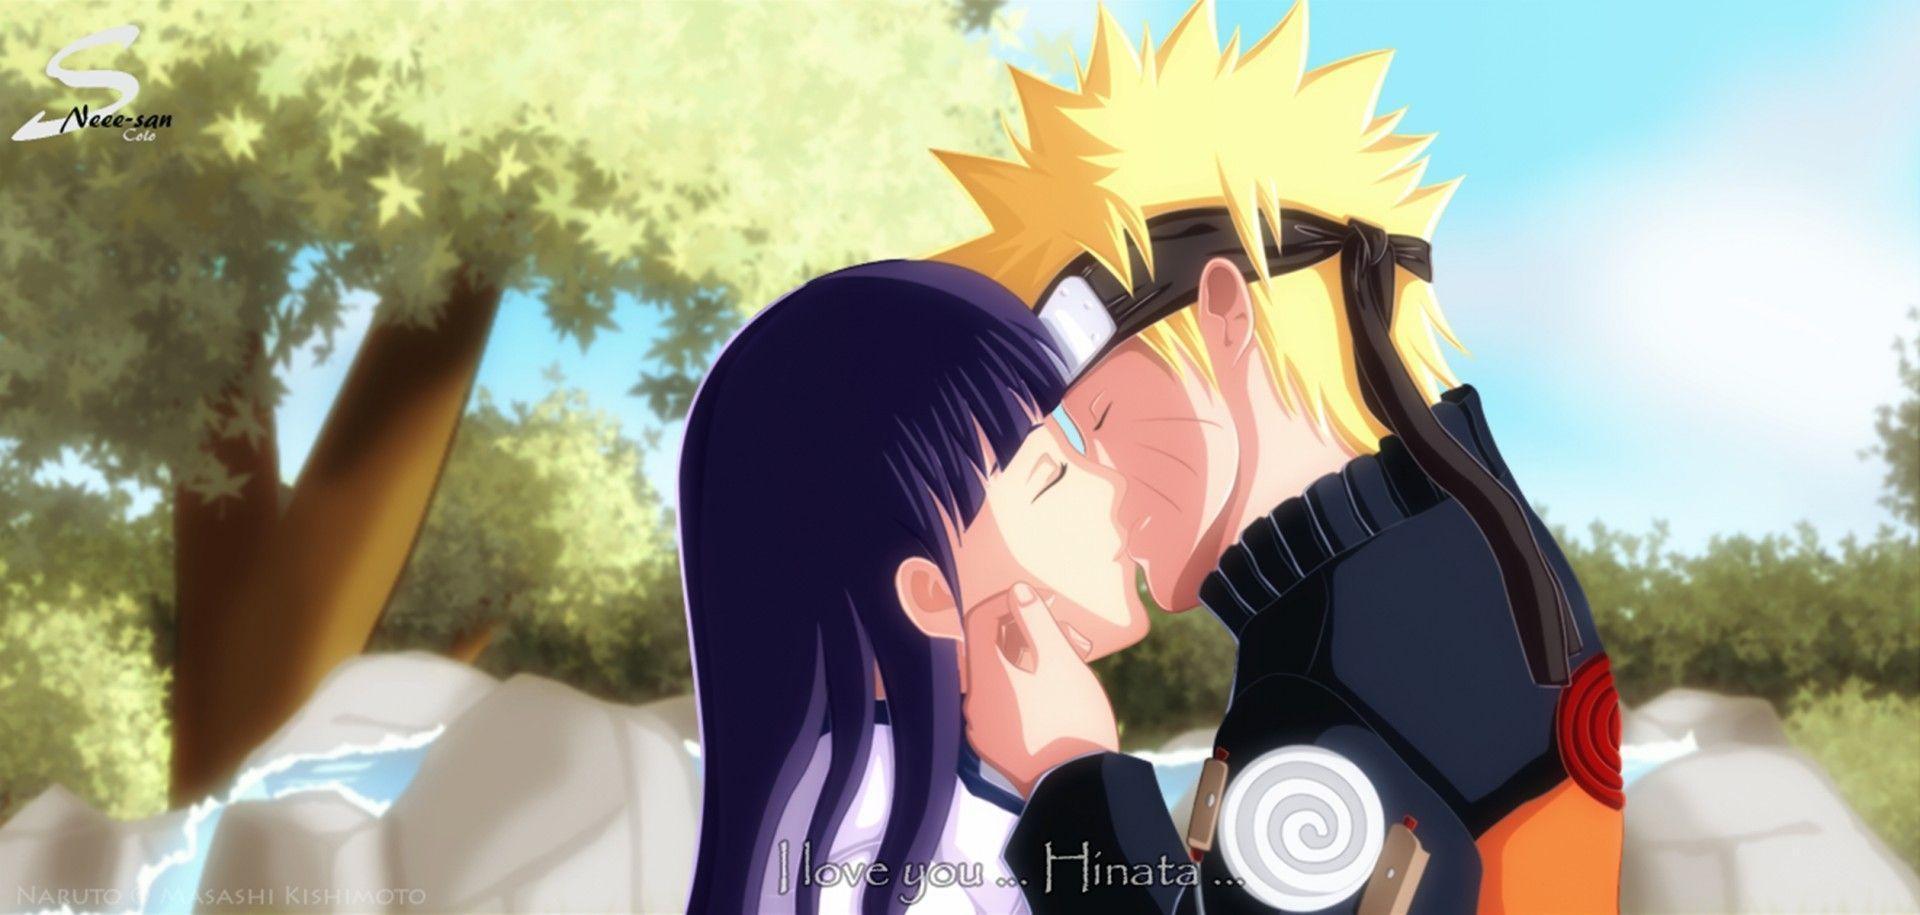 Naruto Hinata Kiss HD Wallpaper of Anime